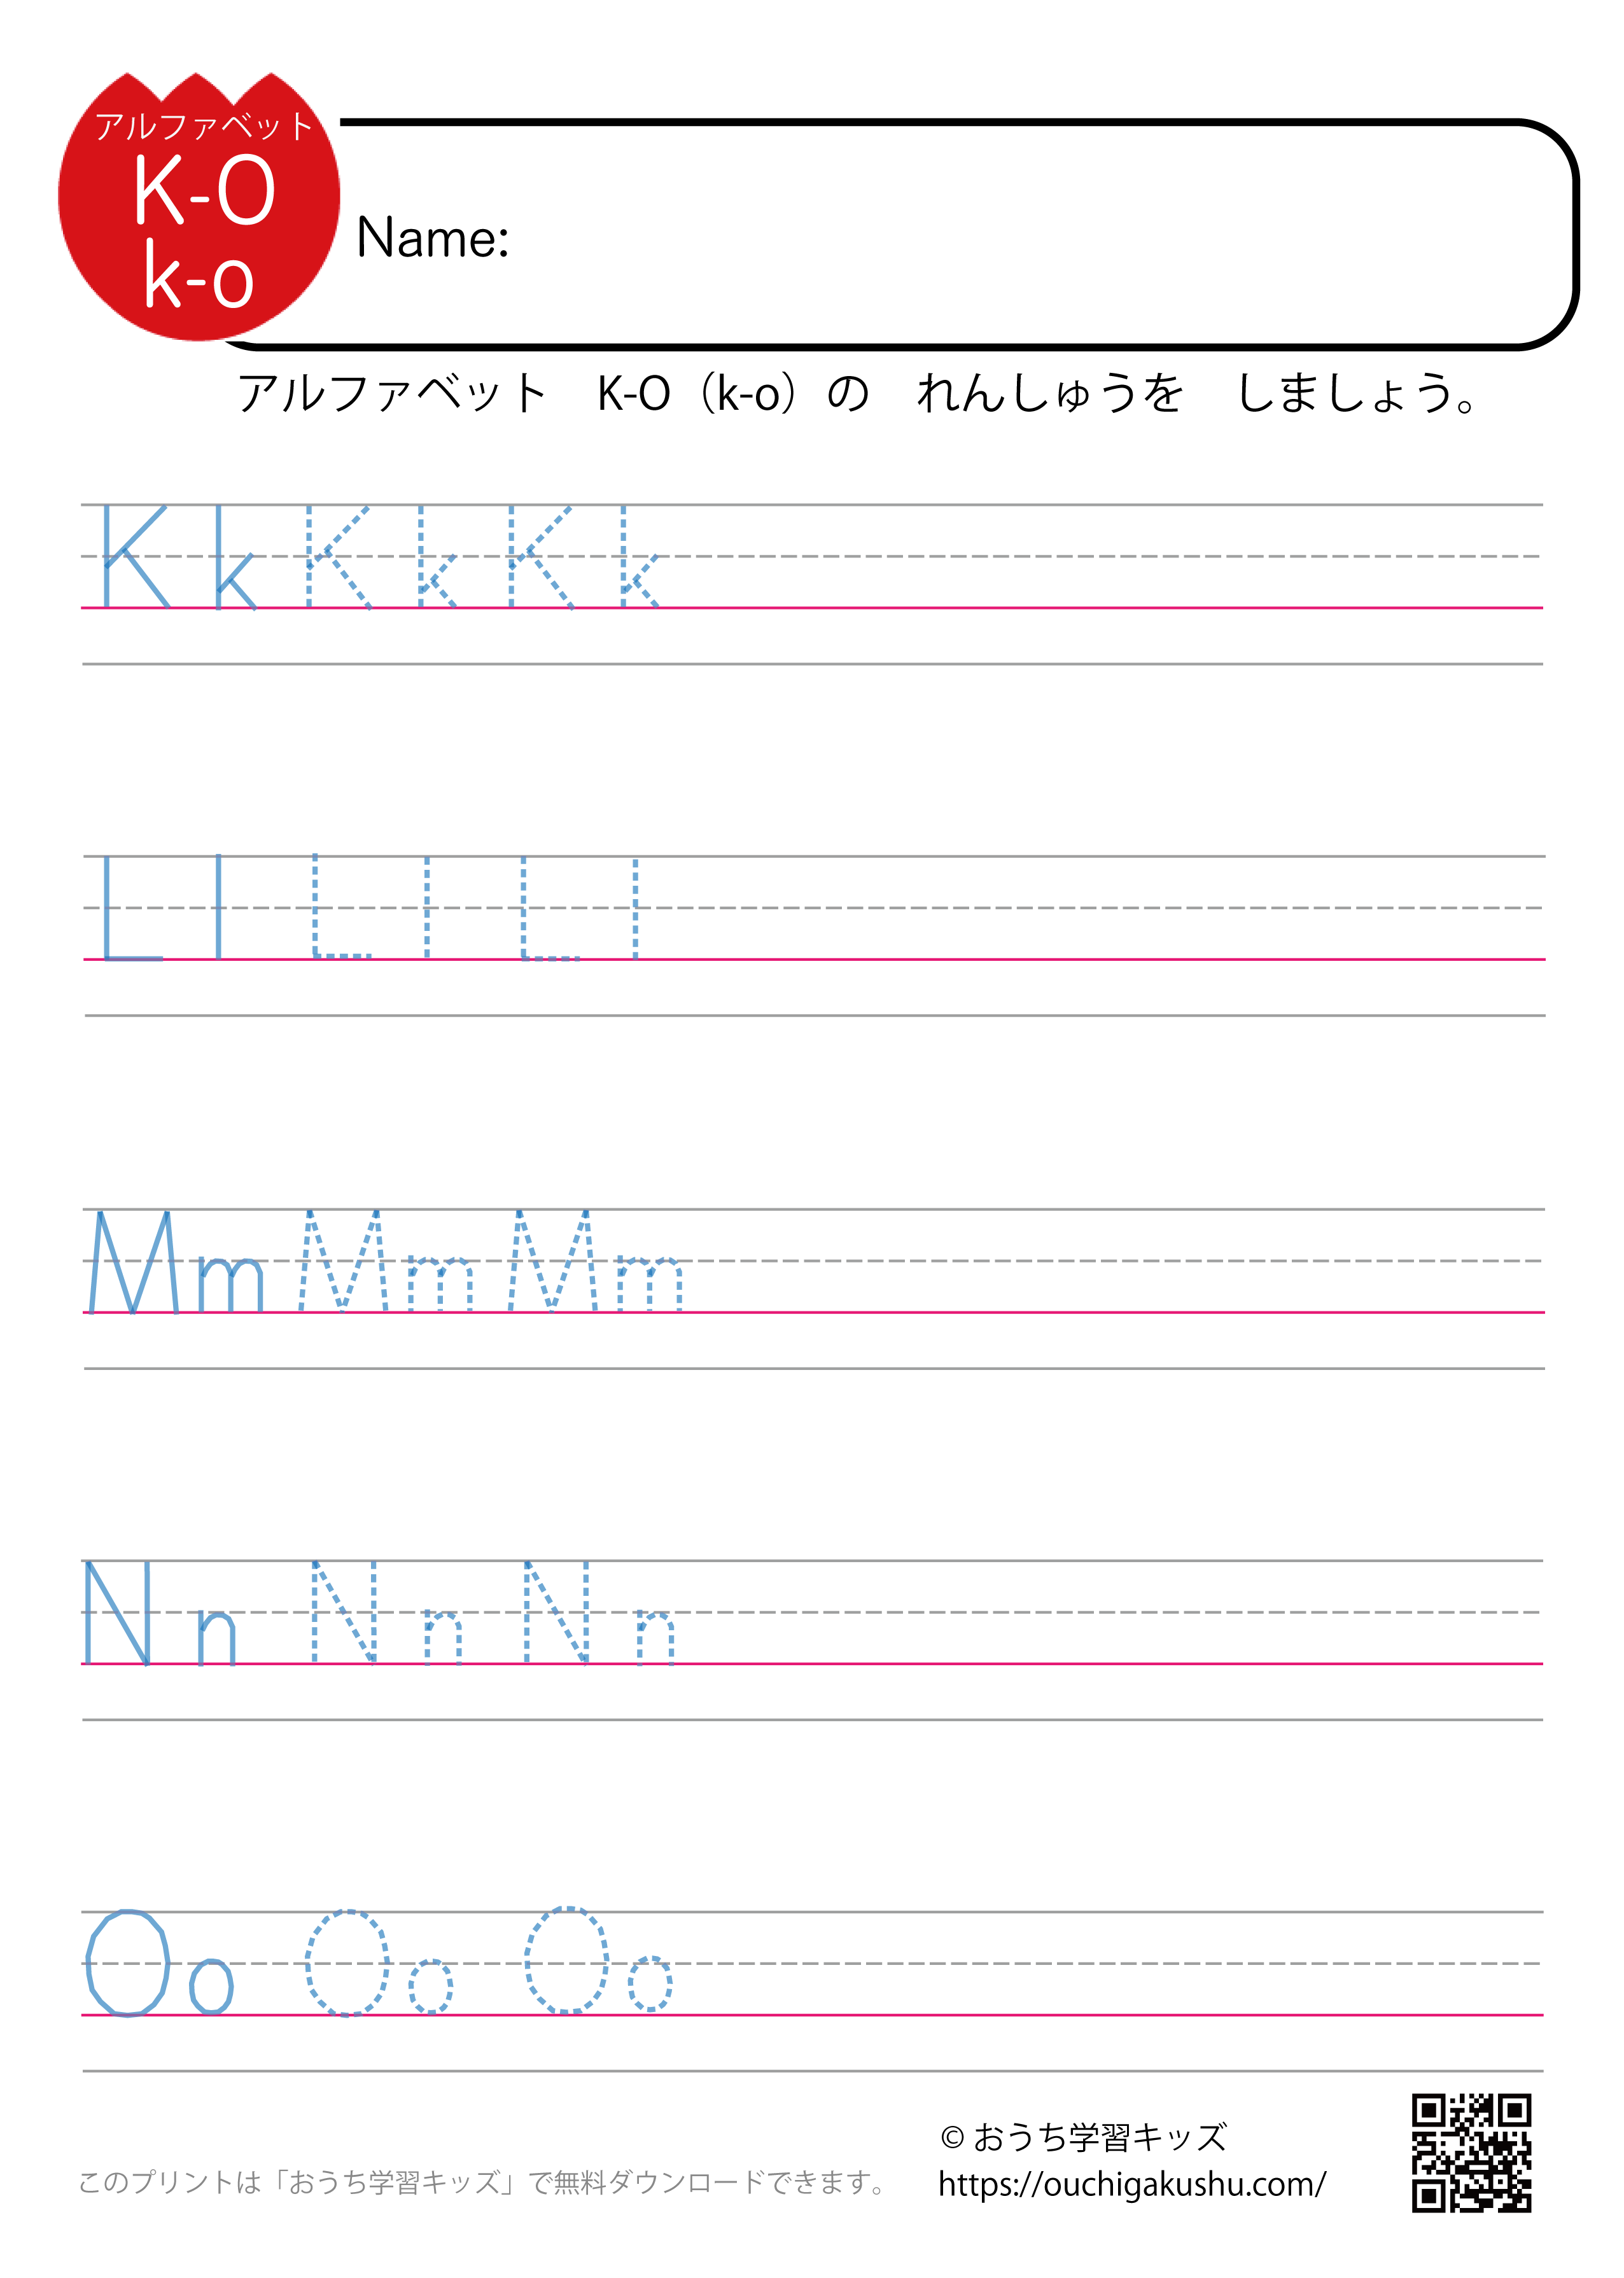 アルファベット練習プリント「KLMNO」